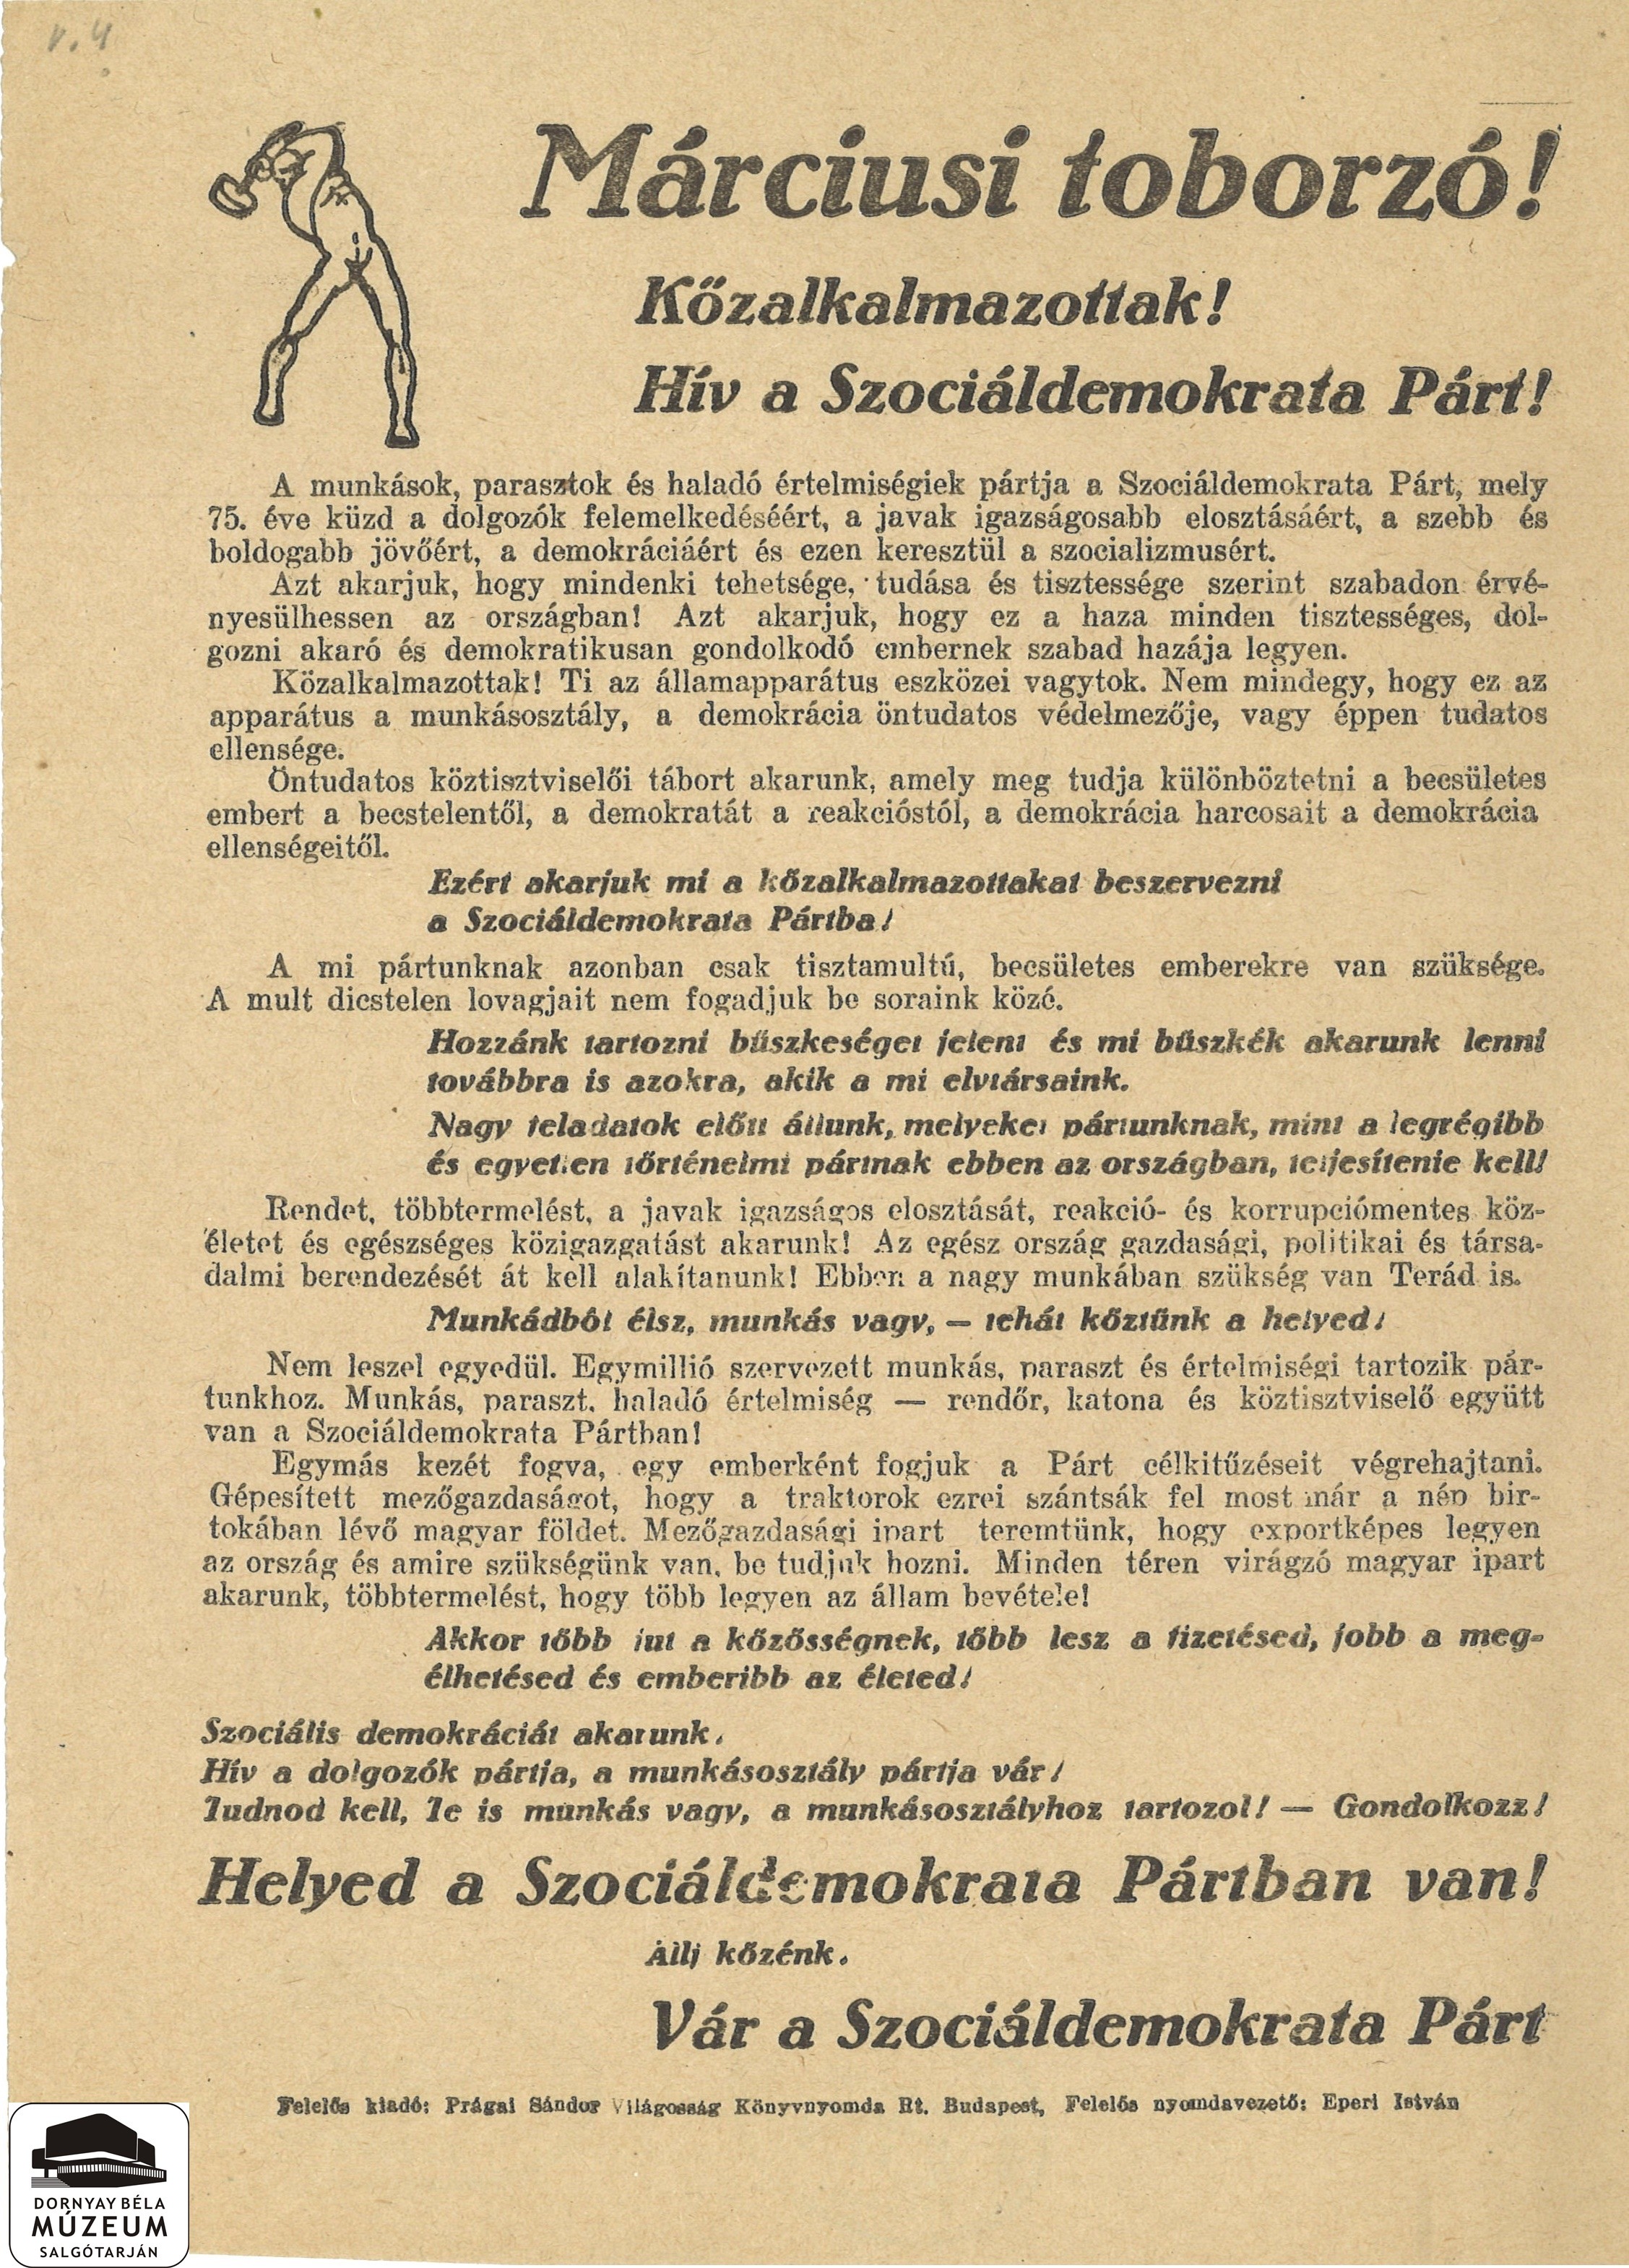 A Szociáldemokrata Párt felhívása a közalkalmazottakhoz (Dornyay Béla Múzeum, Salgótarján CC BY-NC-SA)